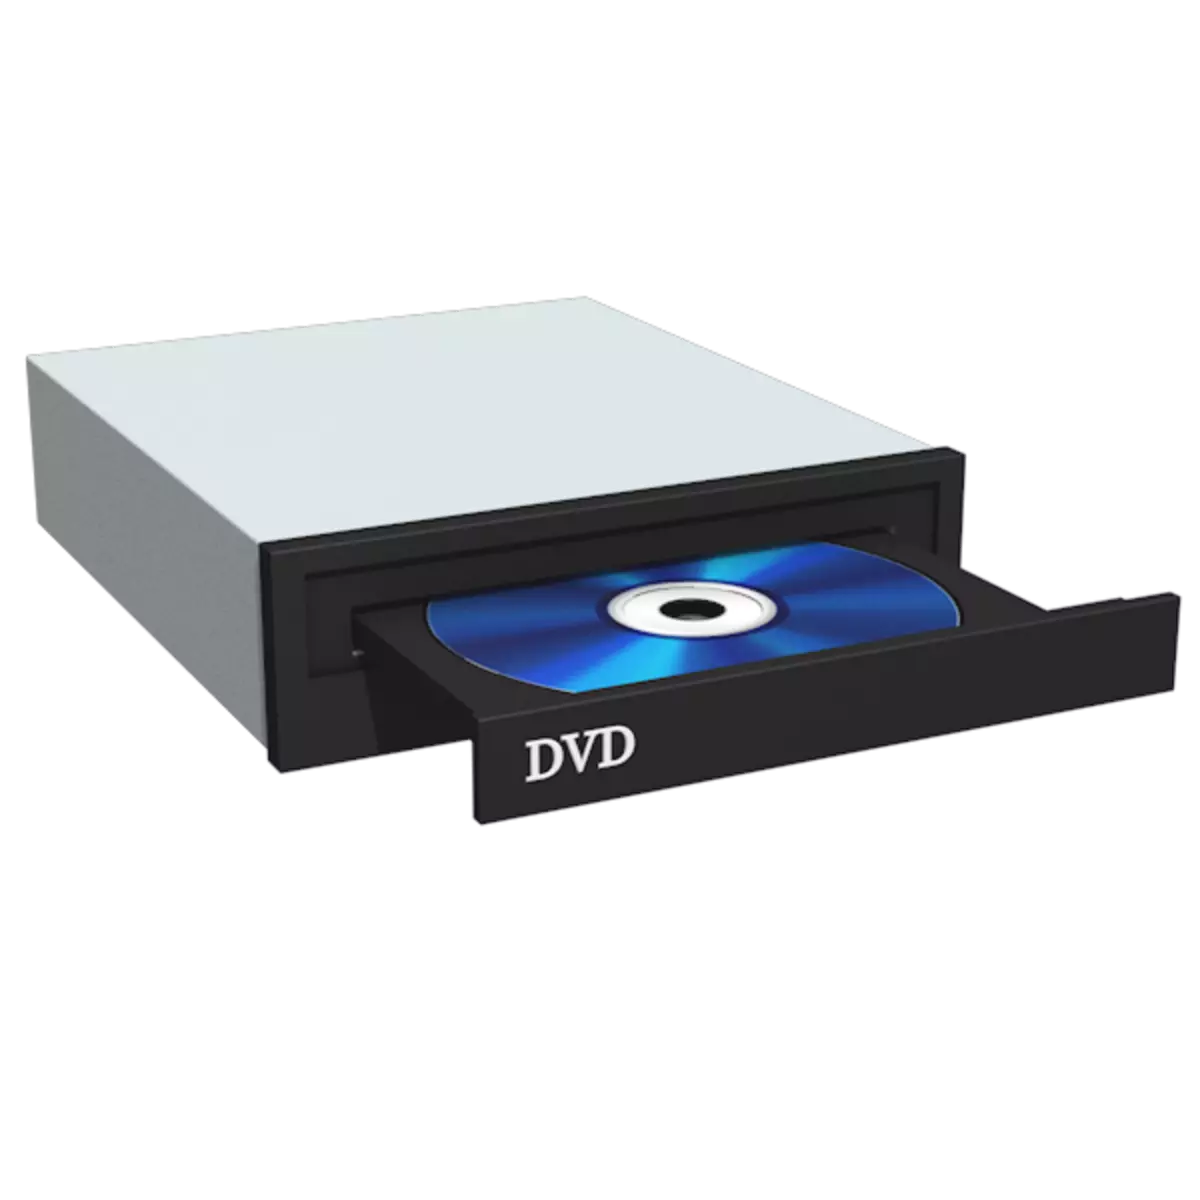 ວິທີການໂອນວີດີໂອຈາກ DVD disk ກັບຄອມພິວເຕີ